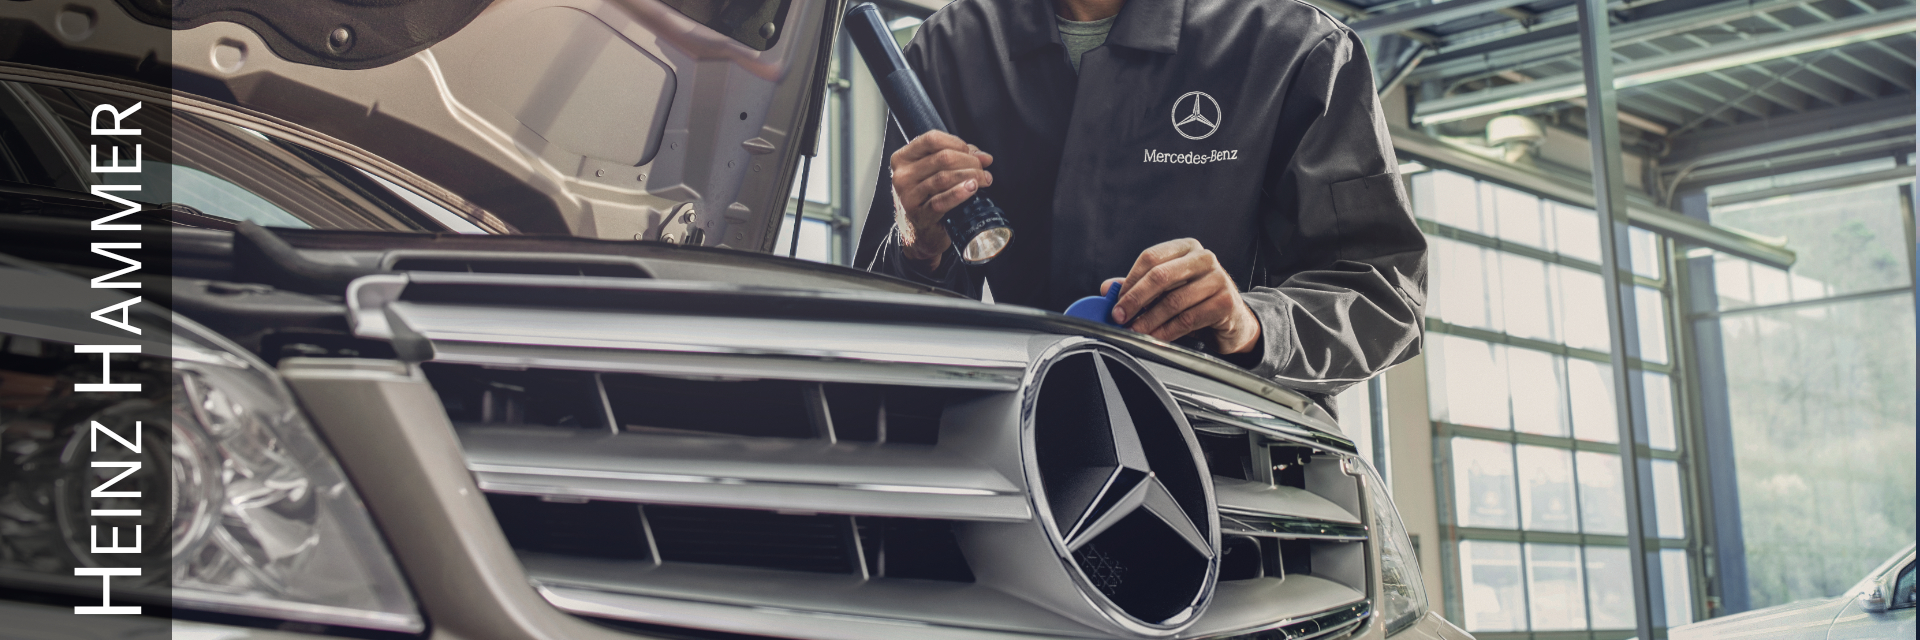 Zubehör und Tuning - Hammer Store - Mercedes-Benz und smart Originalteile  und Zubehör